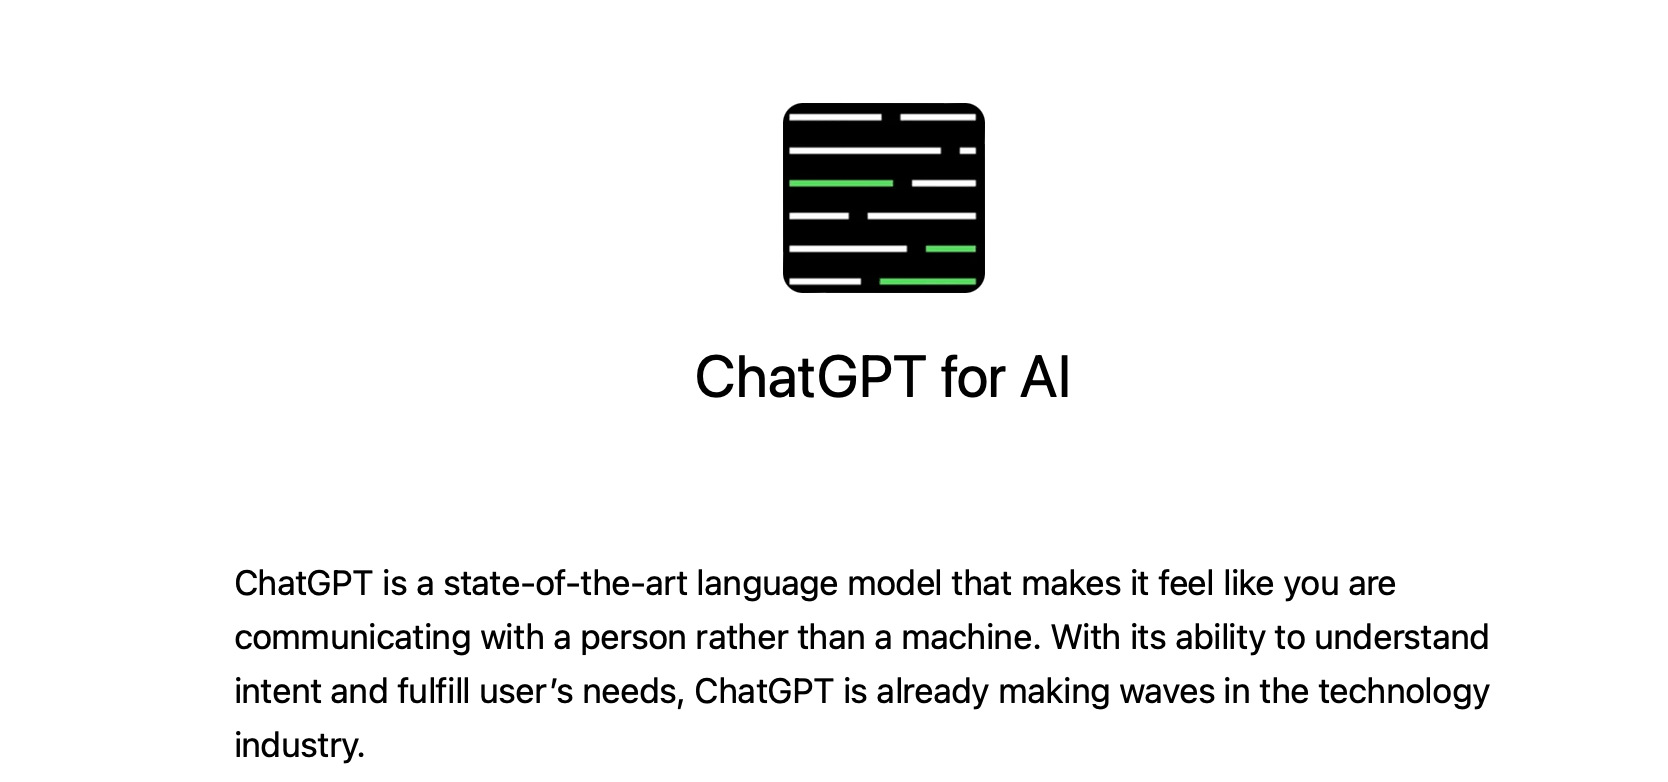 Как используют бот ChatGPT? Описание платформы ChatGPT. Фото.